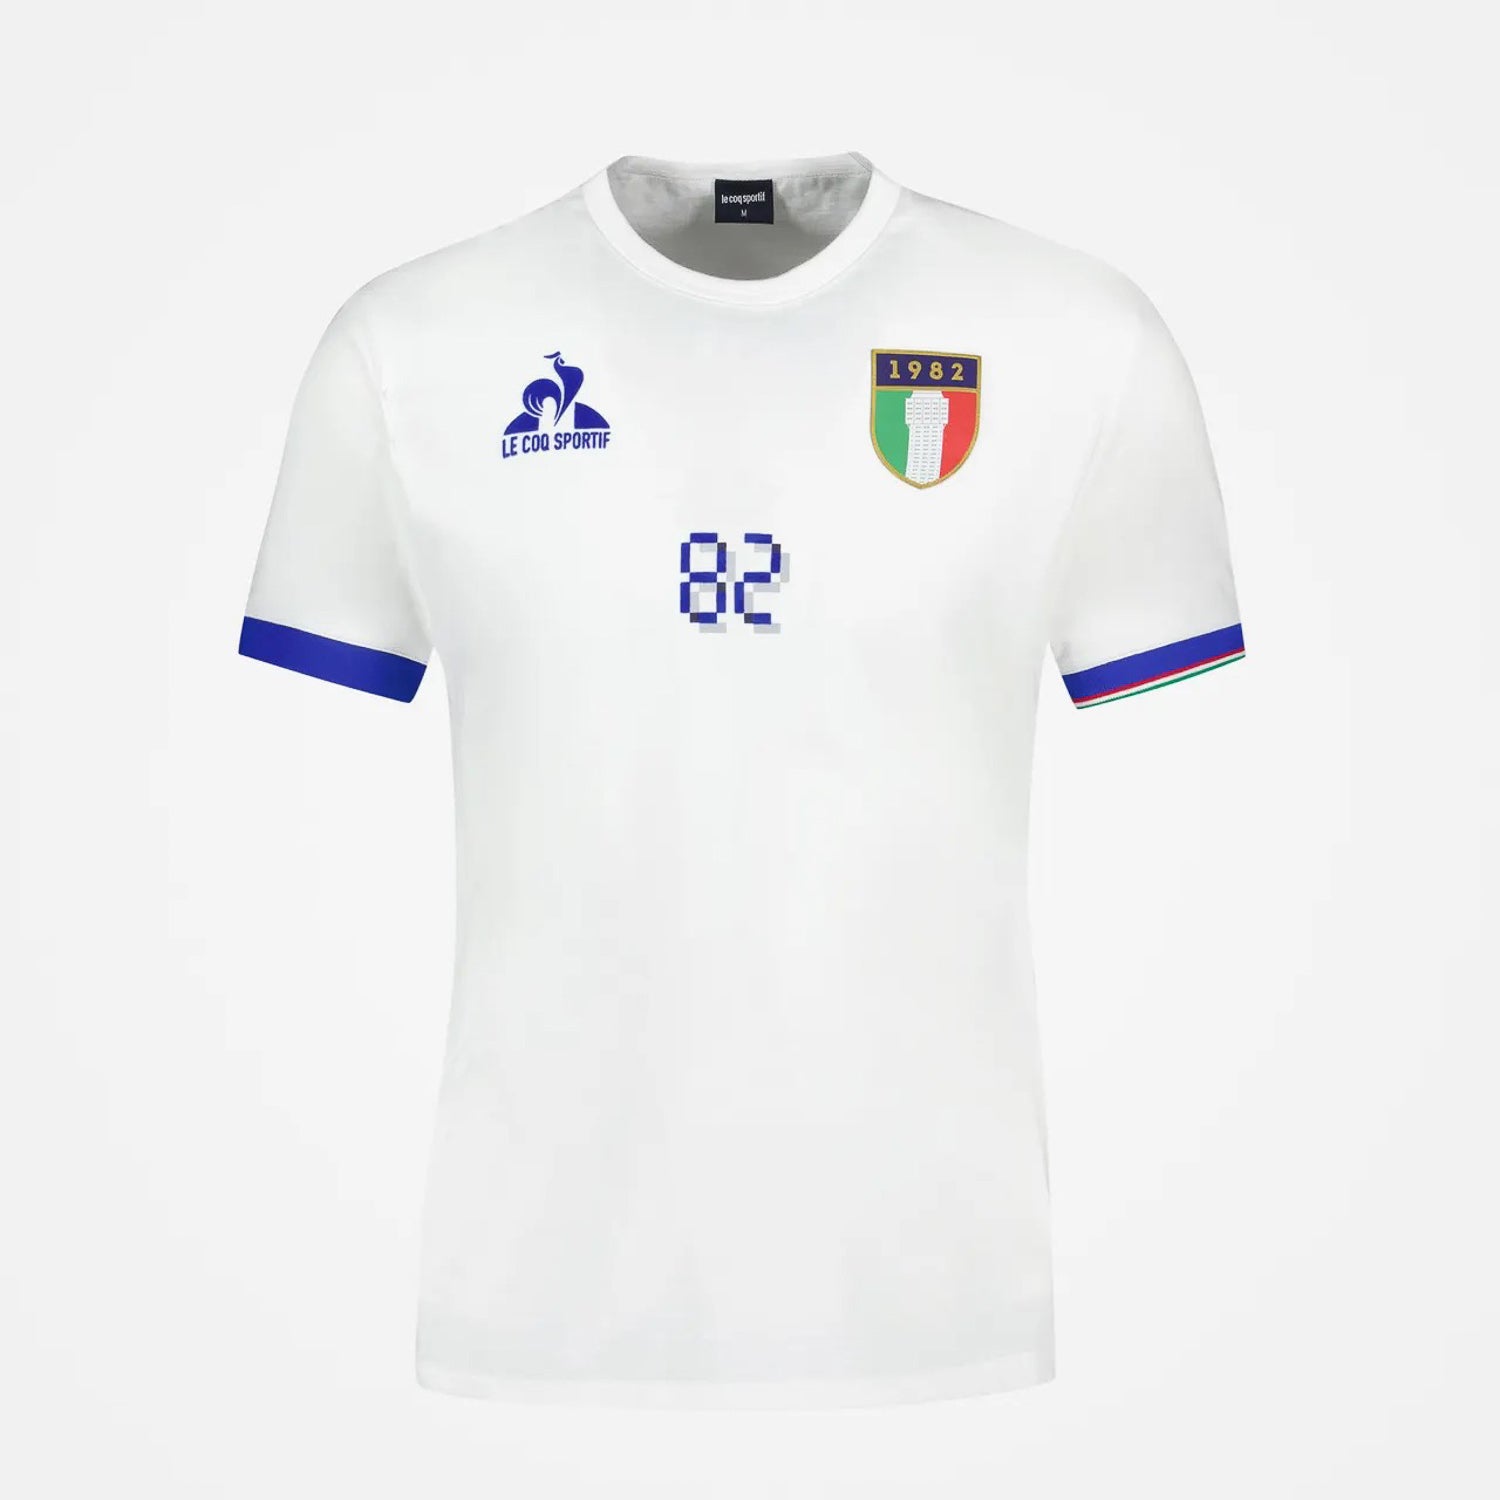 Le Coq Sportif Tee shirt ITALIE 82, T-shirt, Le Coq Sportif